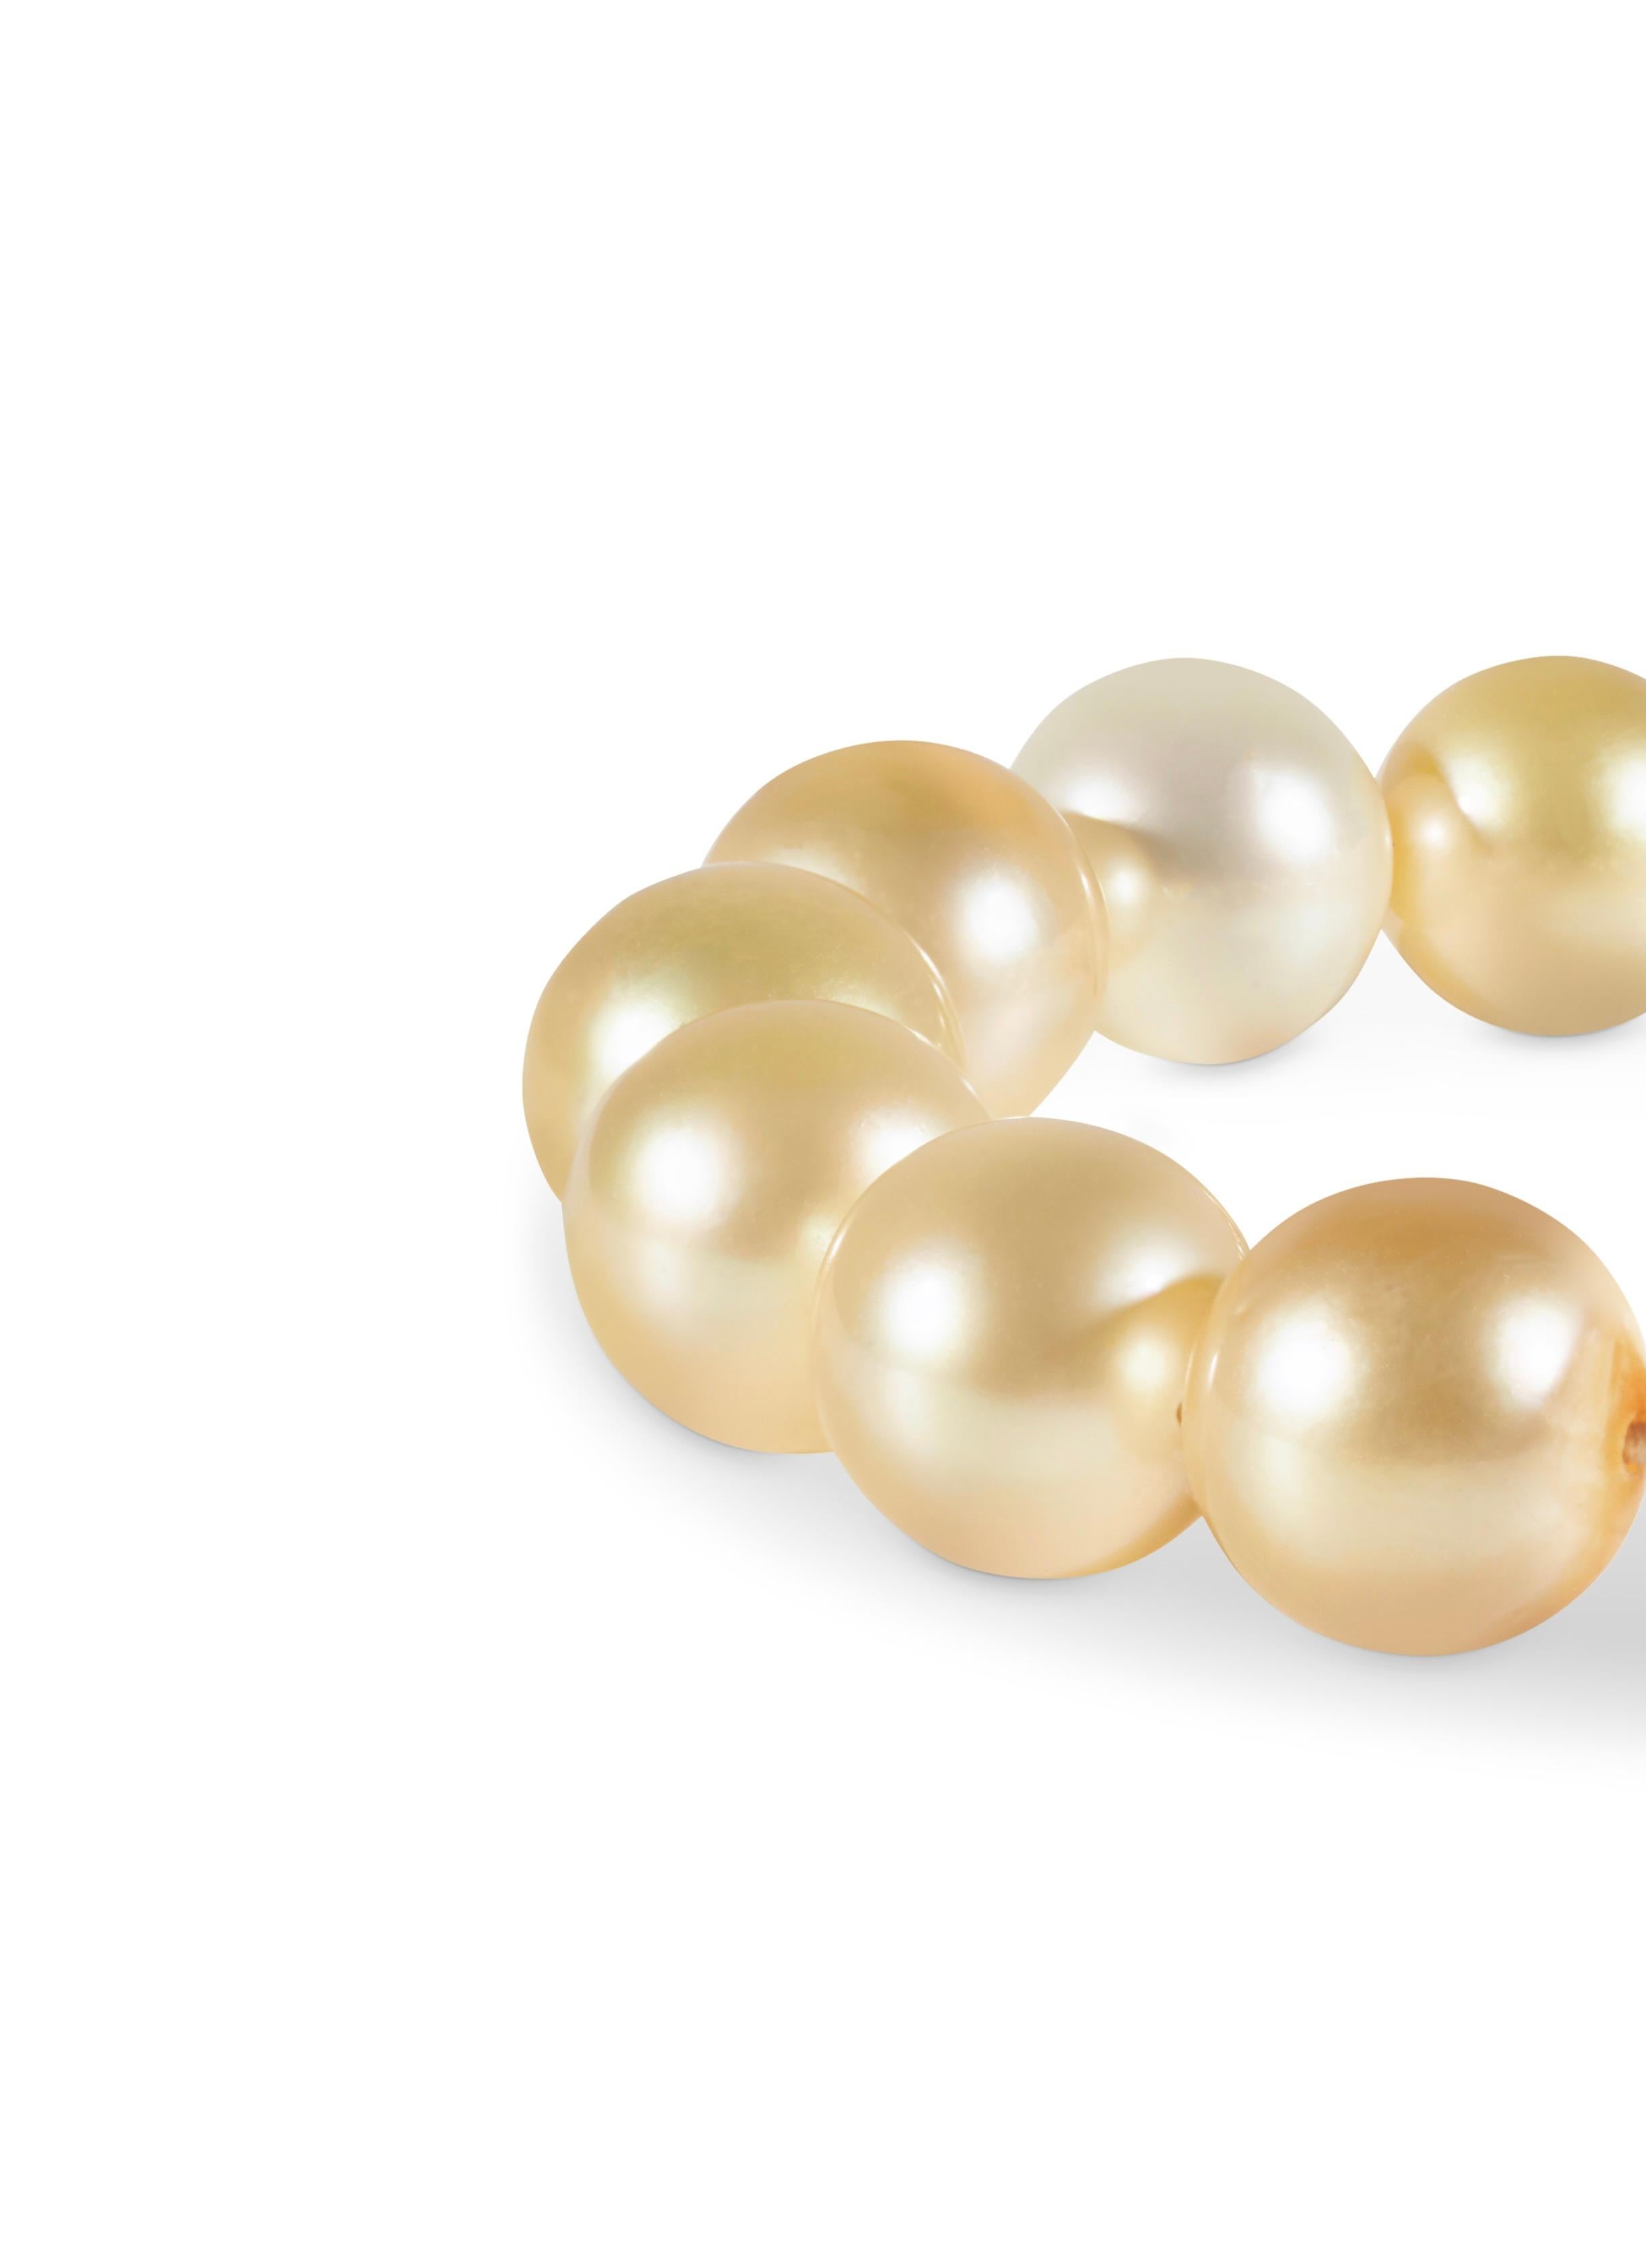 Les bijoux de THEVAULT15 sont définis par la beauté classique des perles et des diamants, ce qui en fait l'accessoire parfait pour toutes les occasions. Le bracelet Ray est composé de perles précieuses AAA Golden South Sea et de perles en diamant